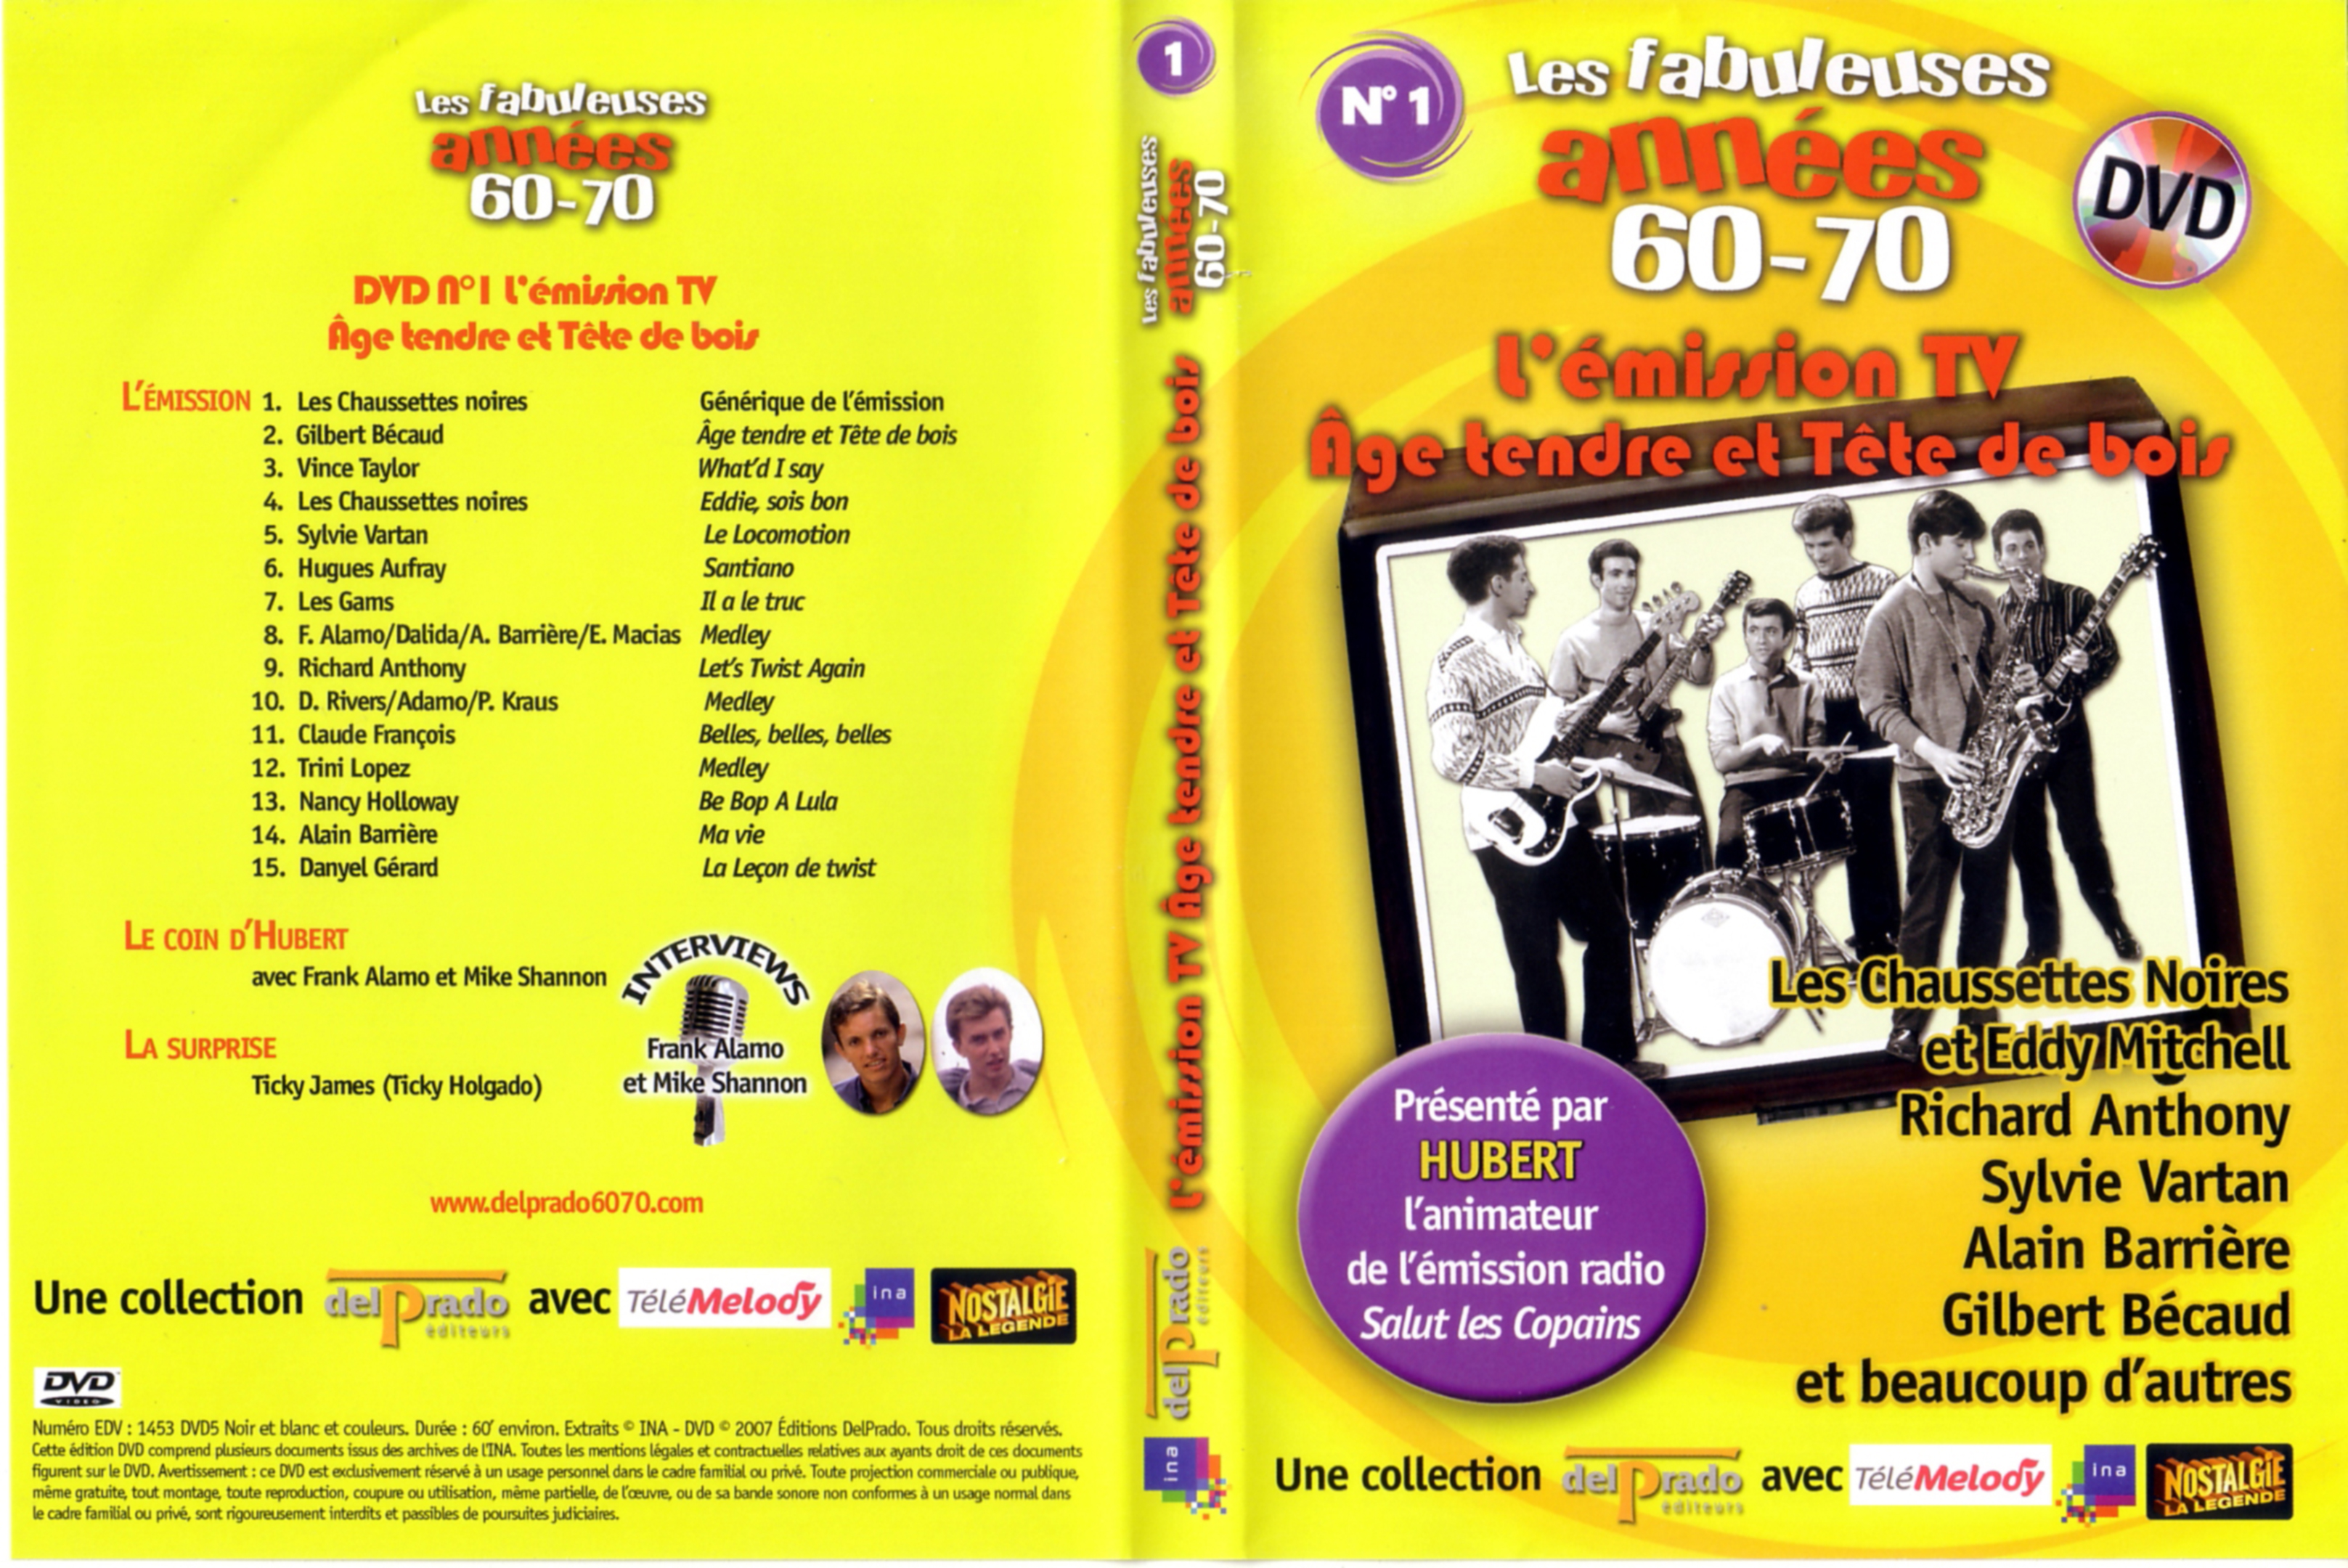 Jaquette DVD Les fabuleuses annes 60-70 vol 01